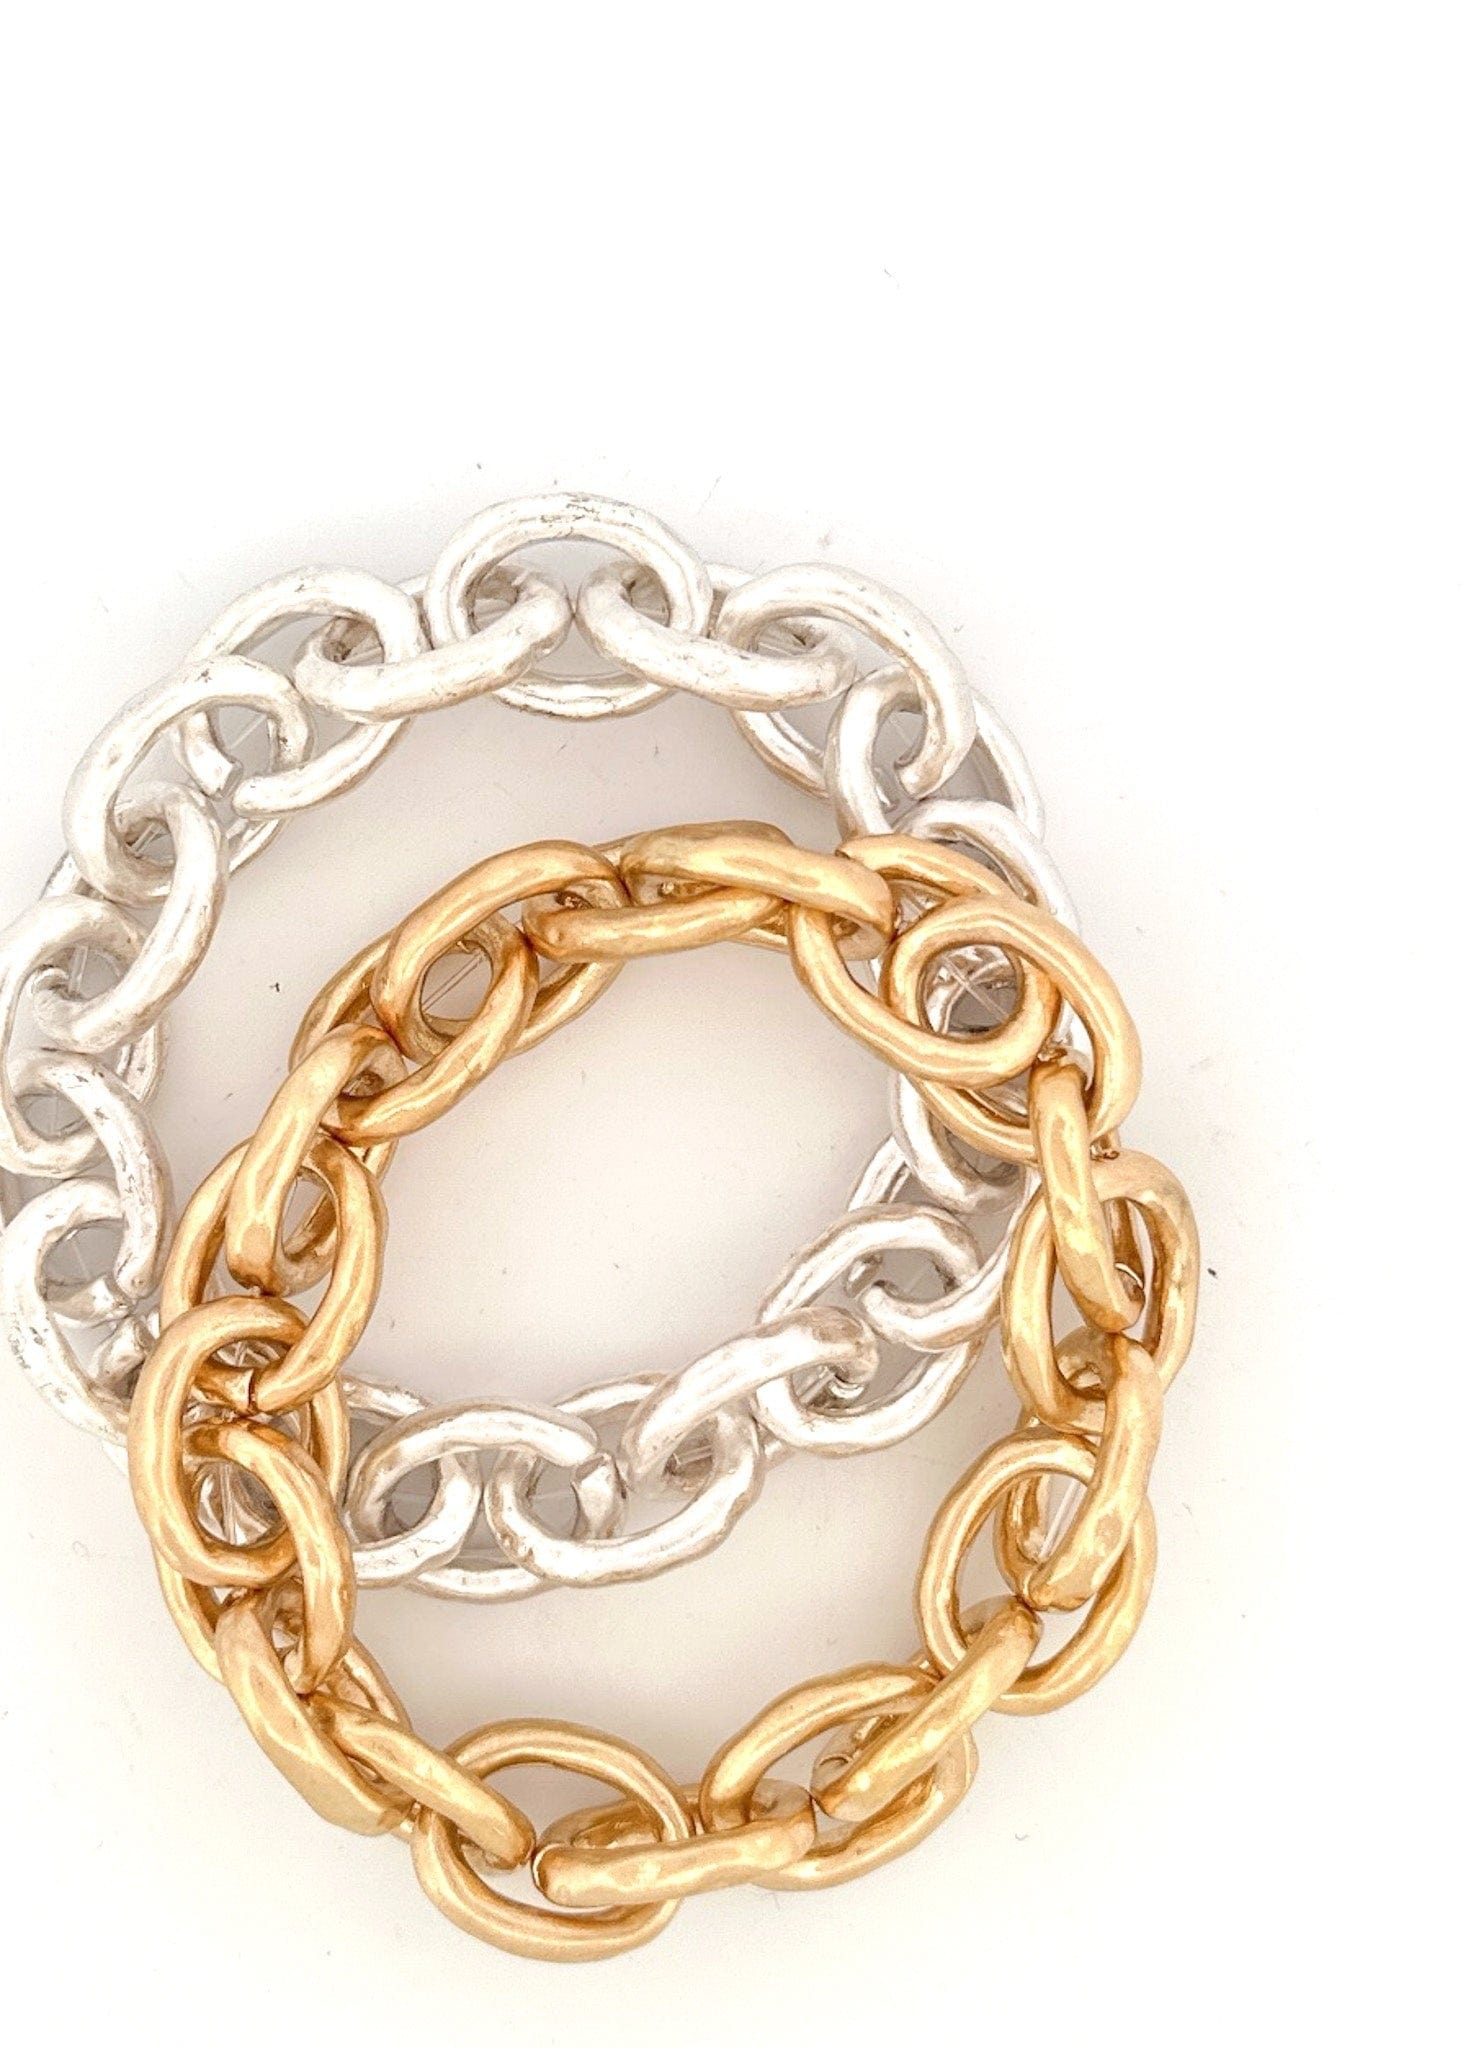 Nette Road Jewelry - Bracelets Chain Link Stretch Bracelet In Multi